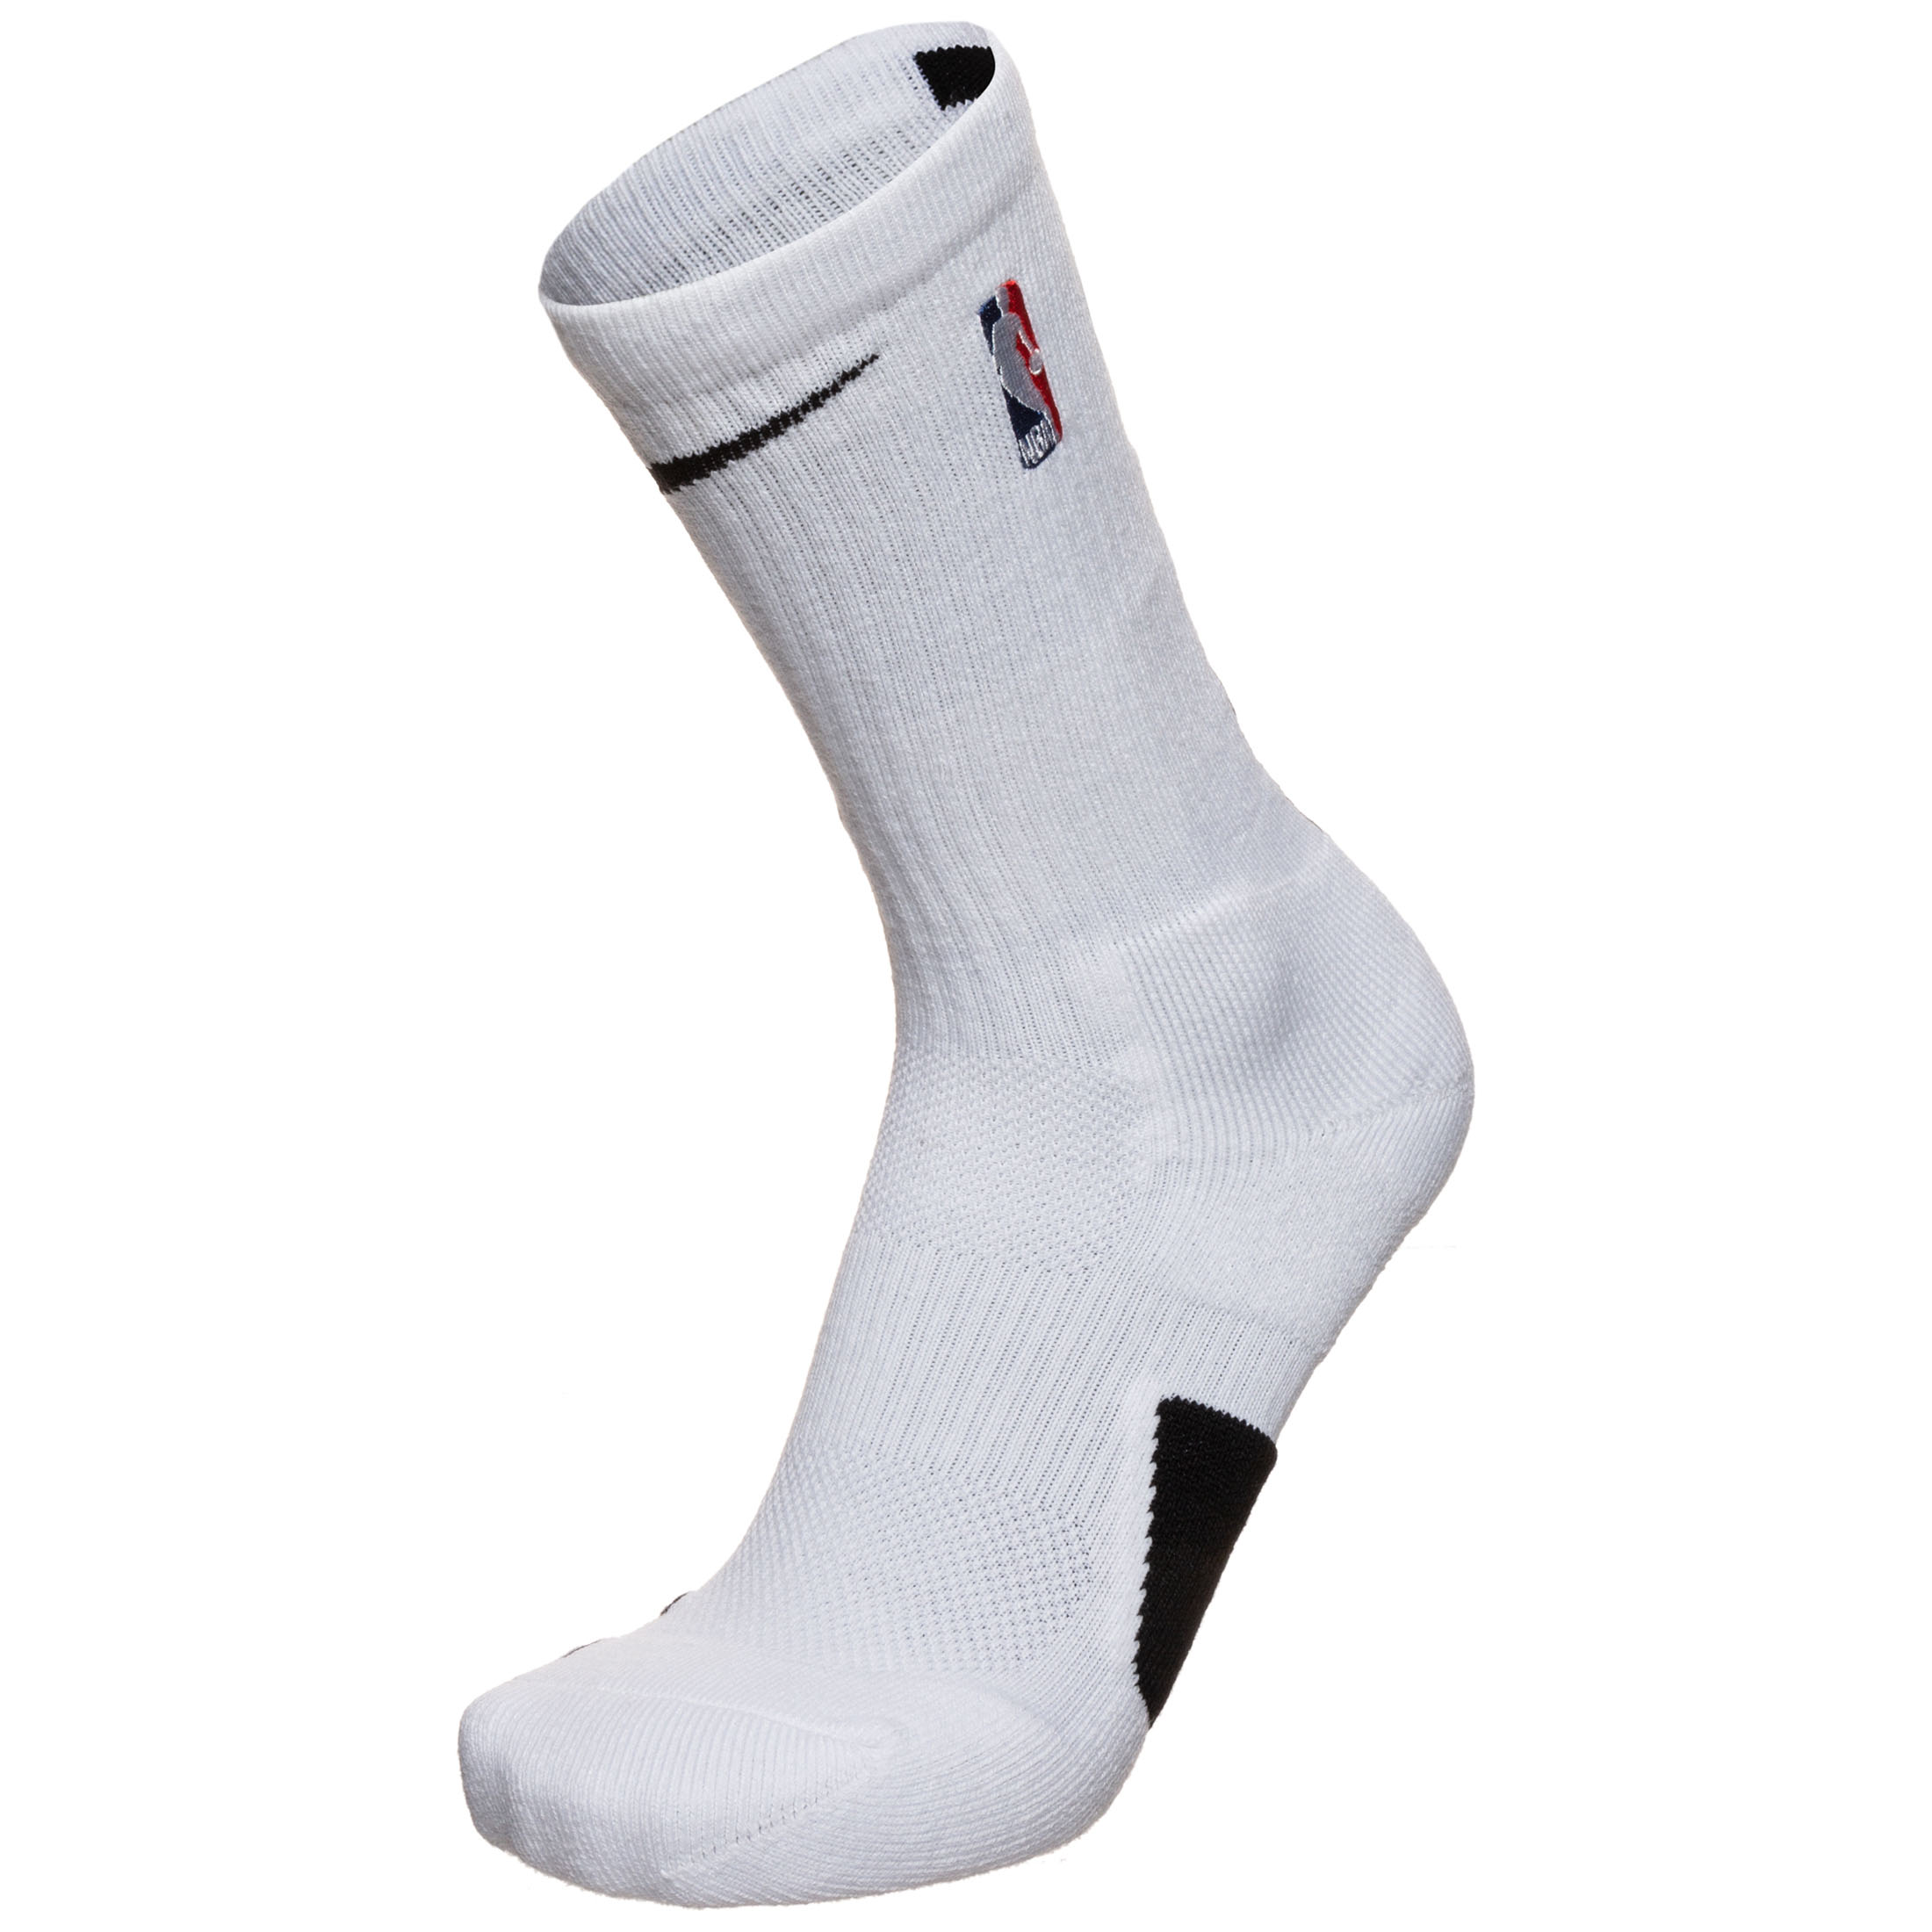 Nike Performance Elite NBA Crew Socken weiß / schwarz kaufen | Ballside